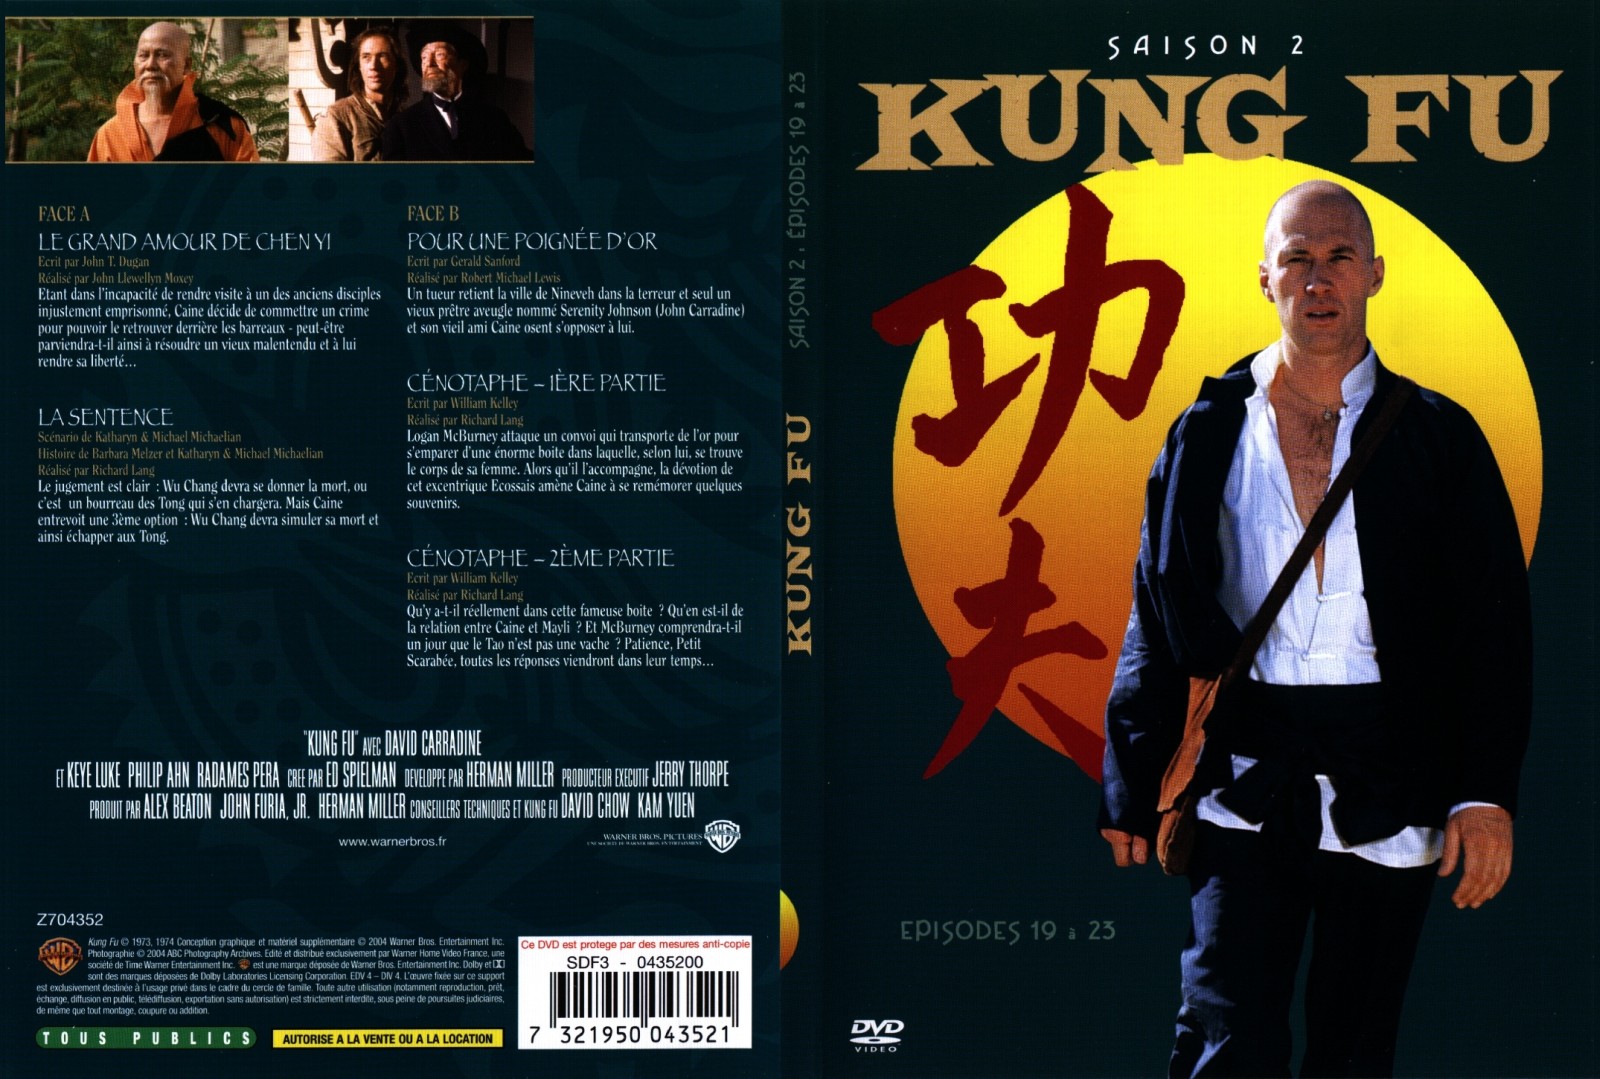 Jaquette DVD Kung fu saison 2 vol 4 - SLIM